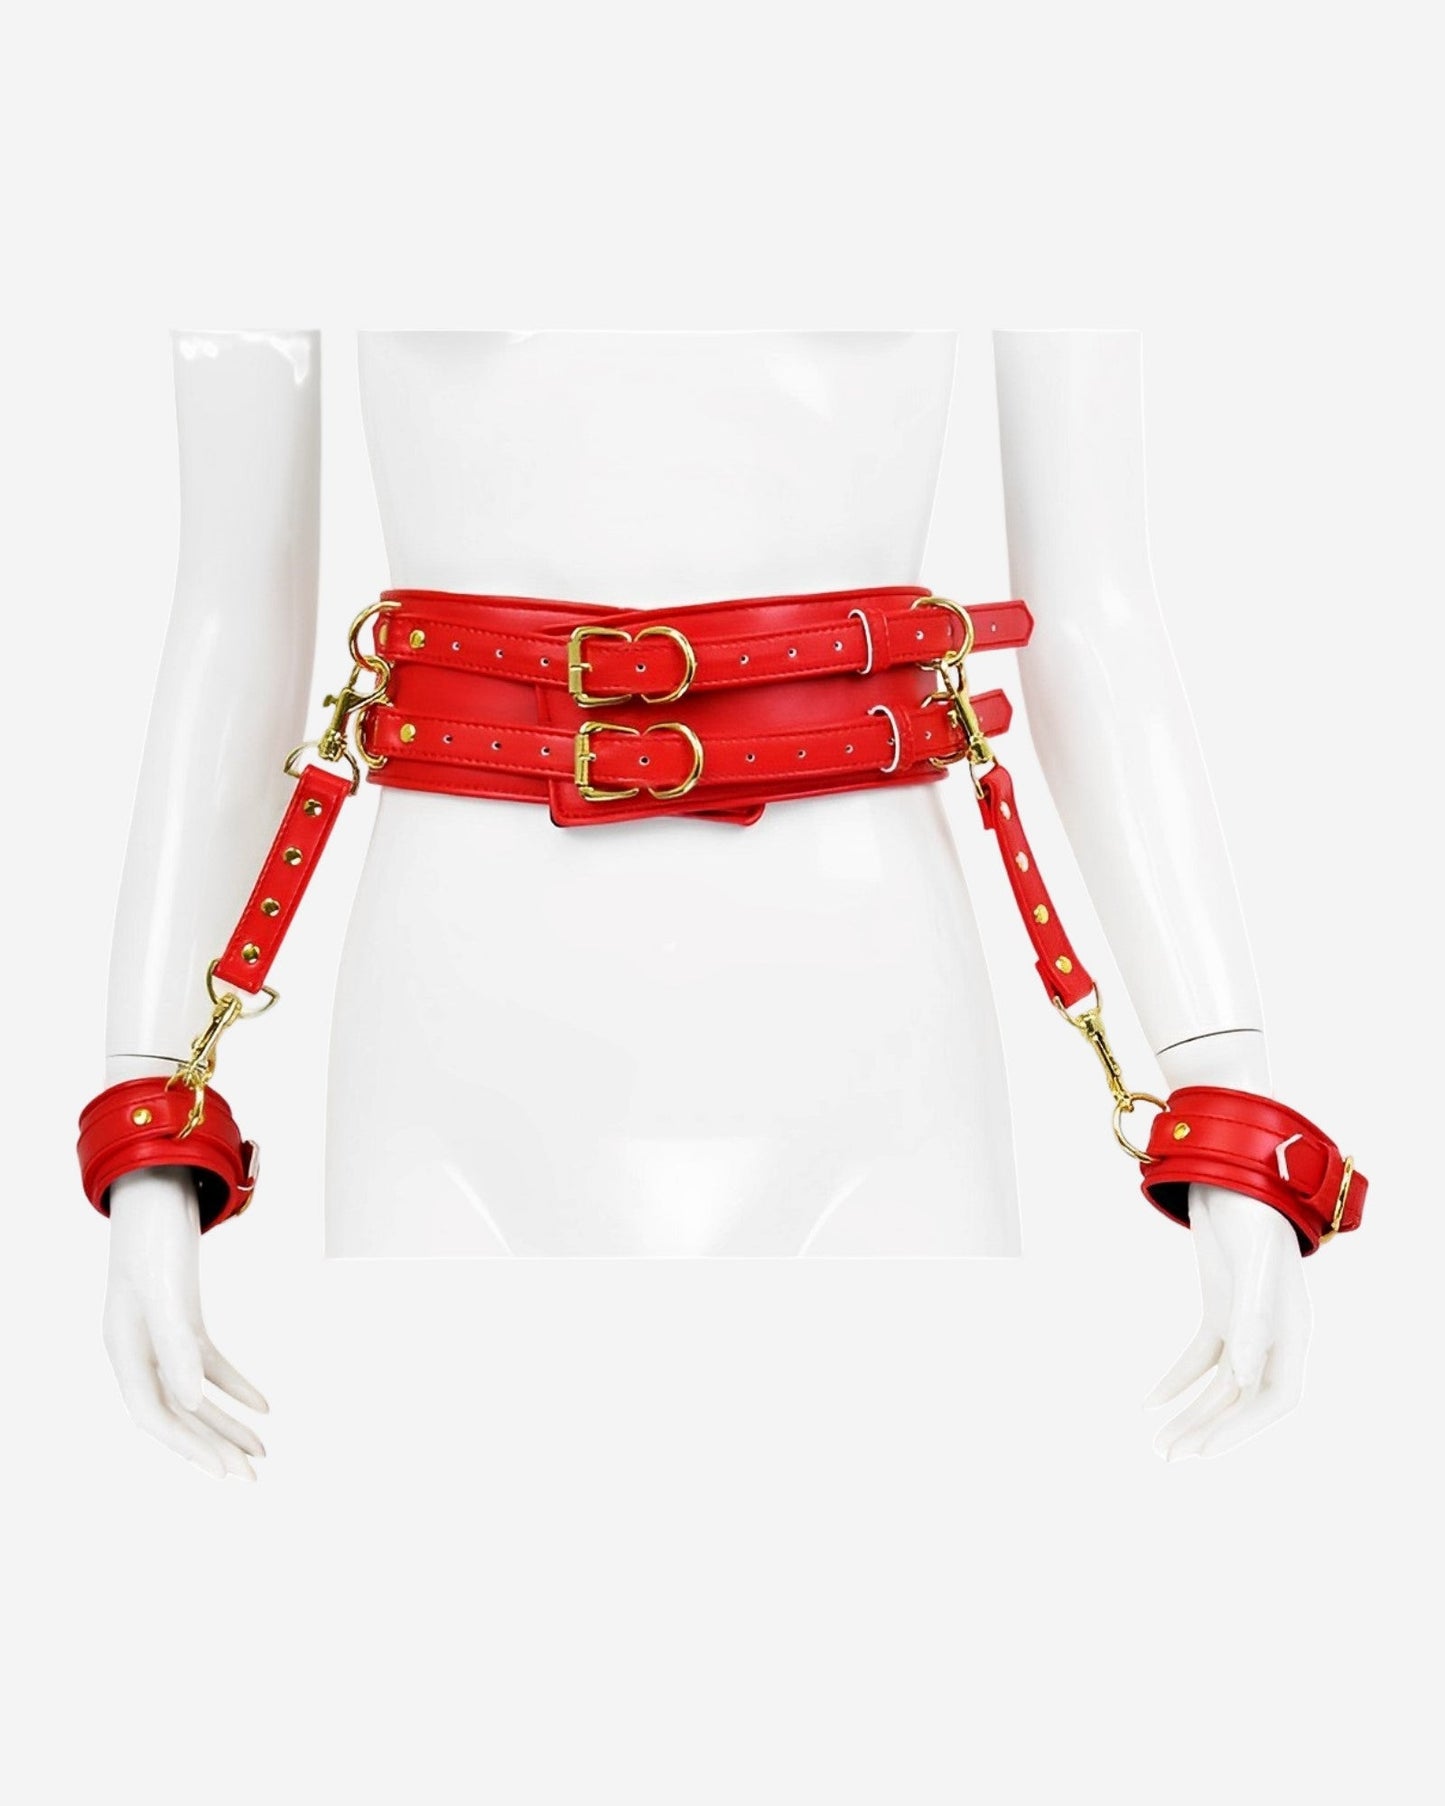 0 Vegan Leather Waist Belt with Wrist Cuffs for Arm Binder restraint